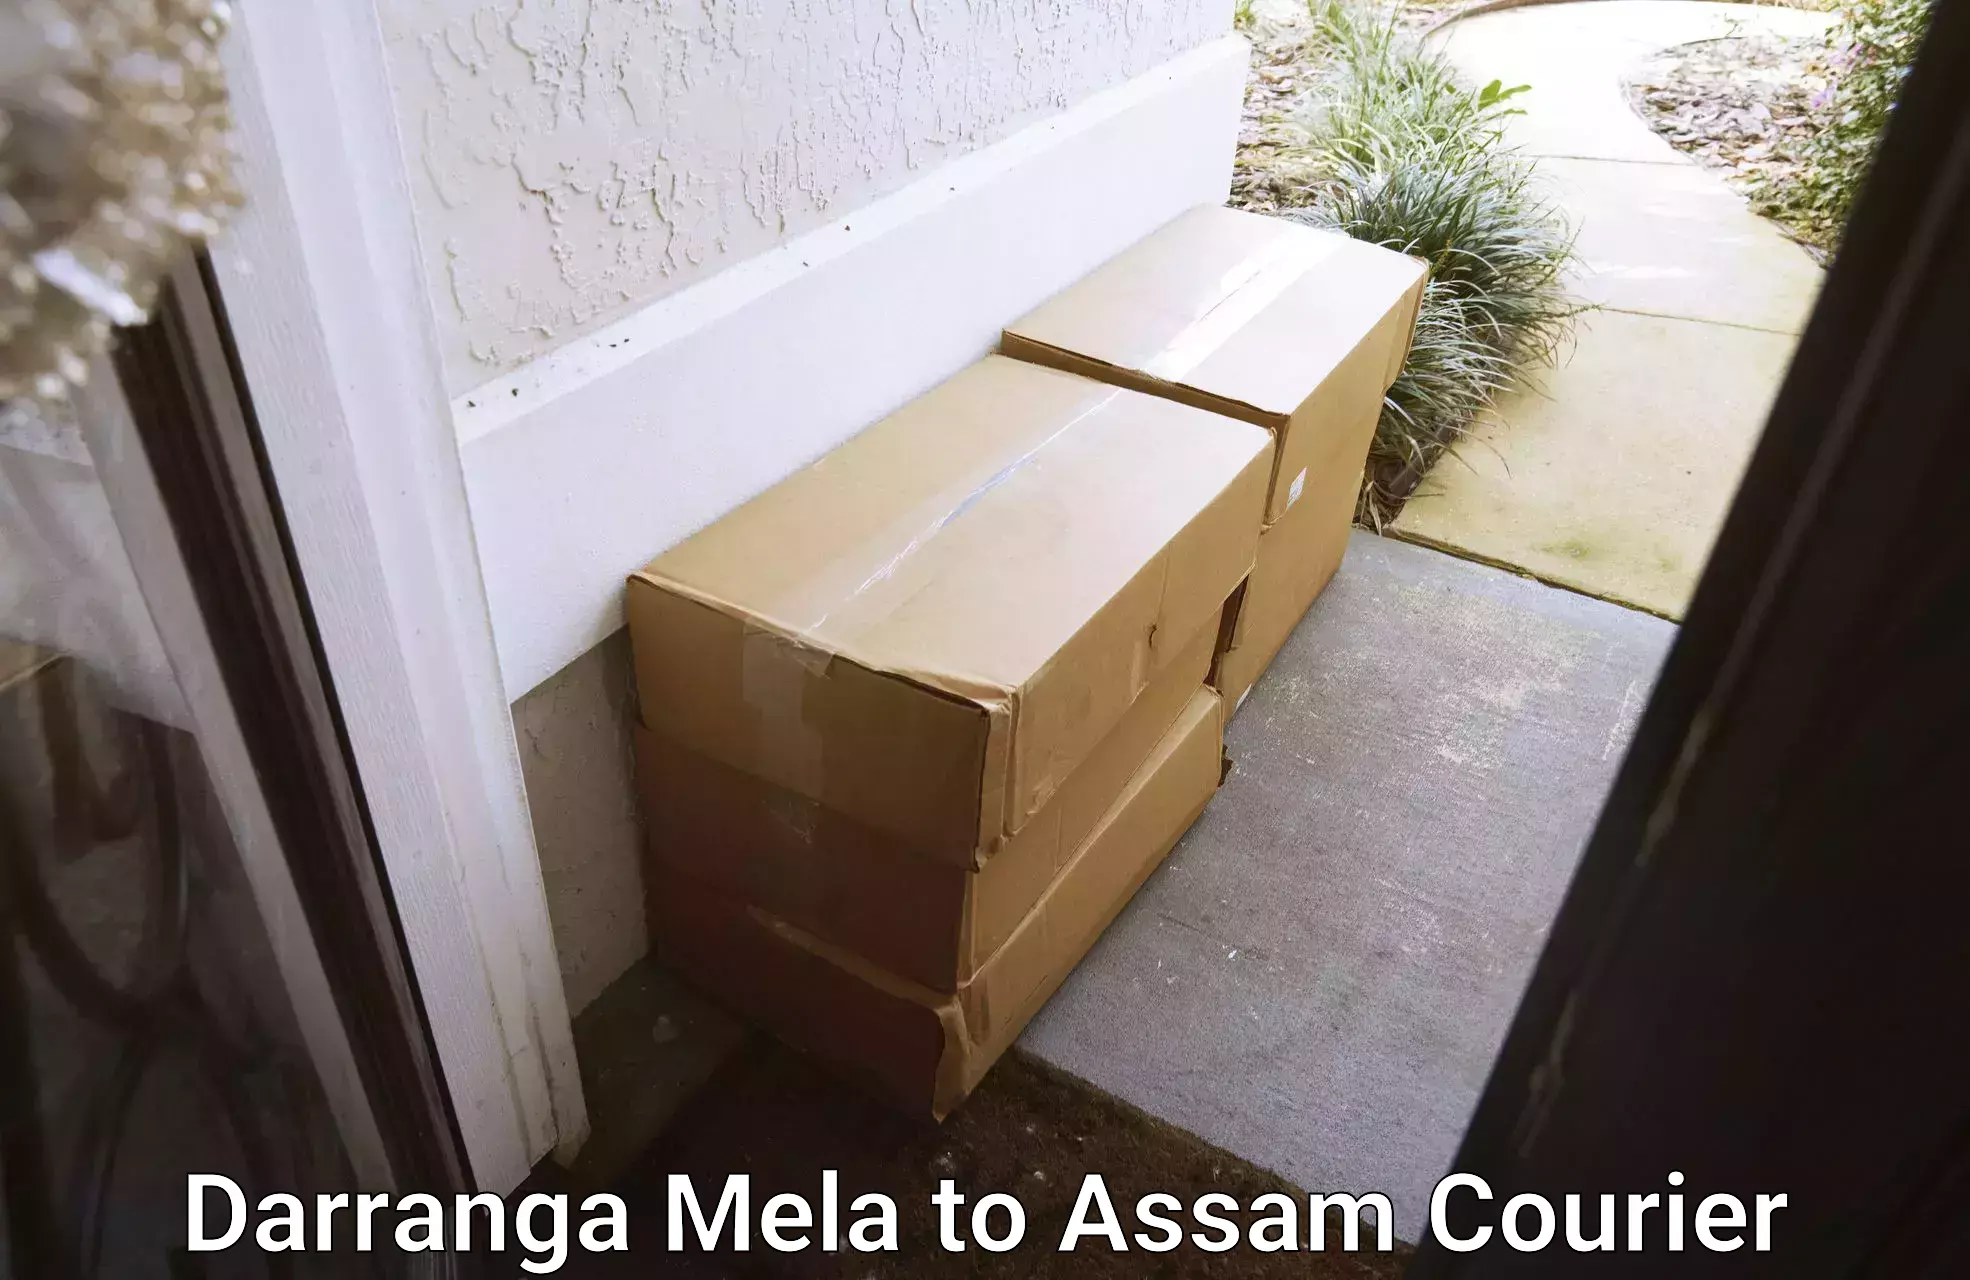 Postal and courier services Darranga Mela to Demow